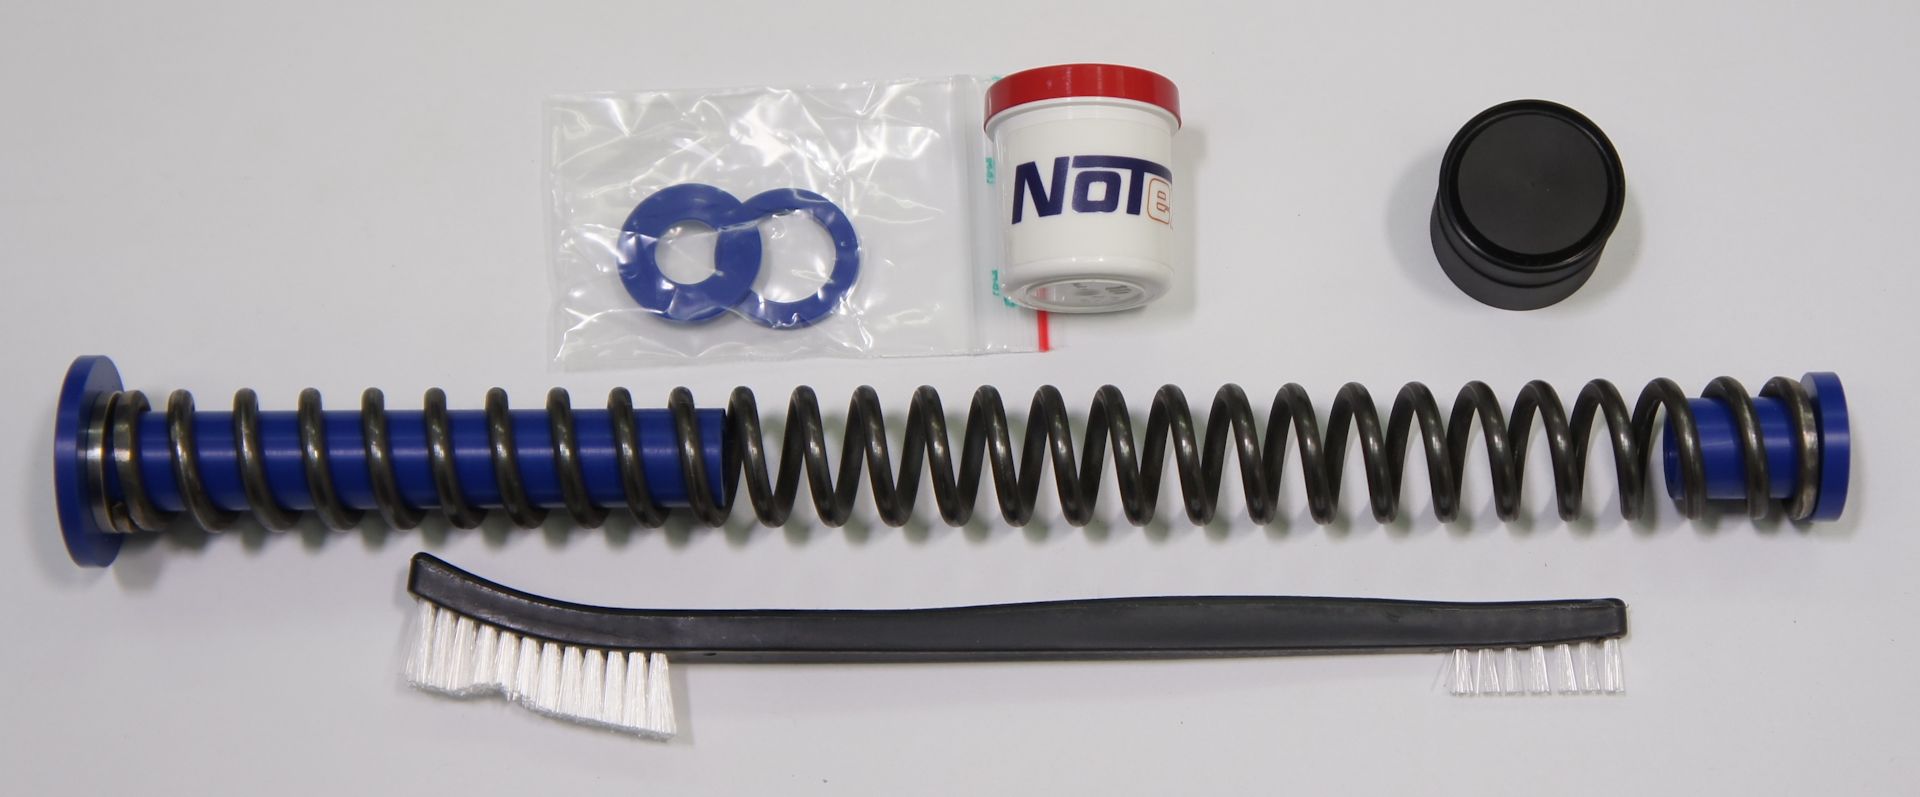 Notex Kit Blue Edition mit Kolbenfeder GB (< 16 J), Federführungen und speziellem Schmierstoff für HW 77 und HW 97 Kaliber 4,5mm